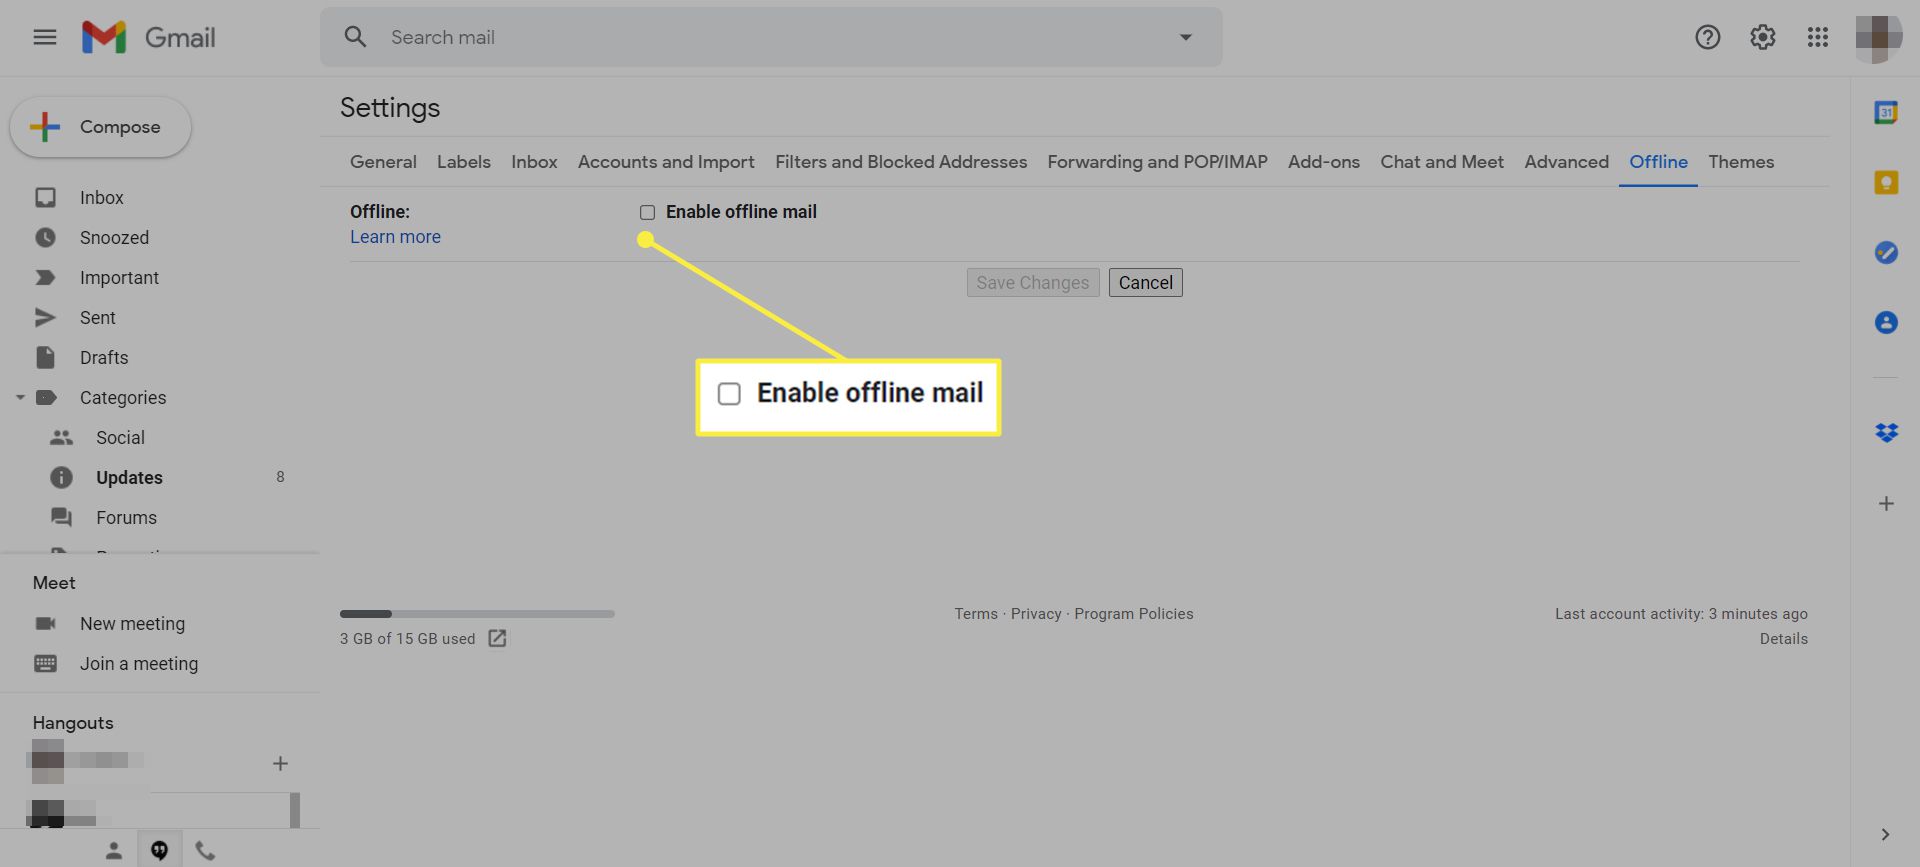 Налаштування Gmail із виділеною опцією 